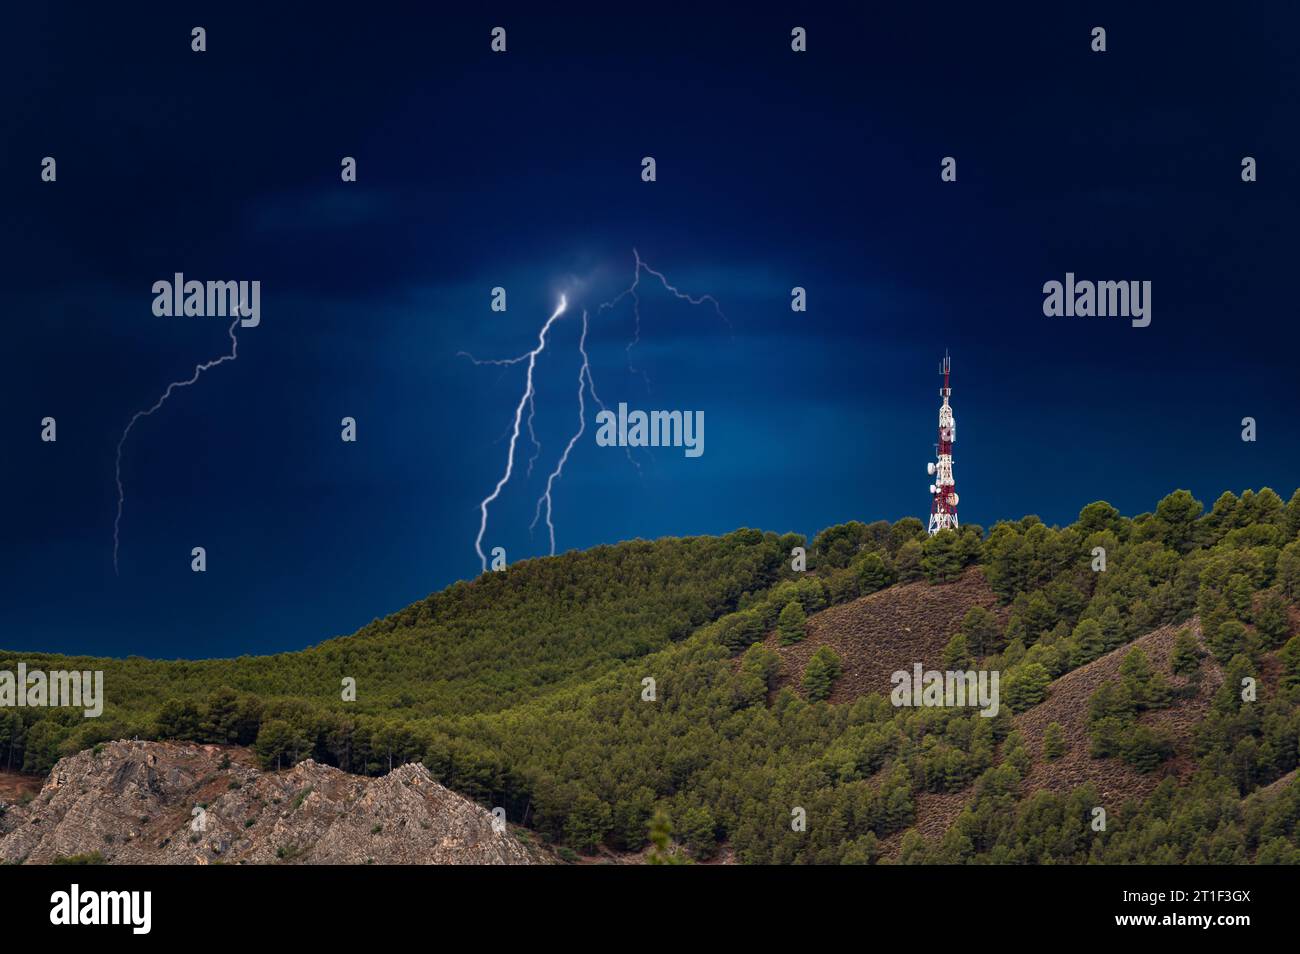 Sturm mit Blitz neben einer großen Telekommunikationsantenne auf einem Hügel mit Bäumen Stockfoto